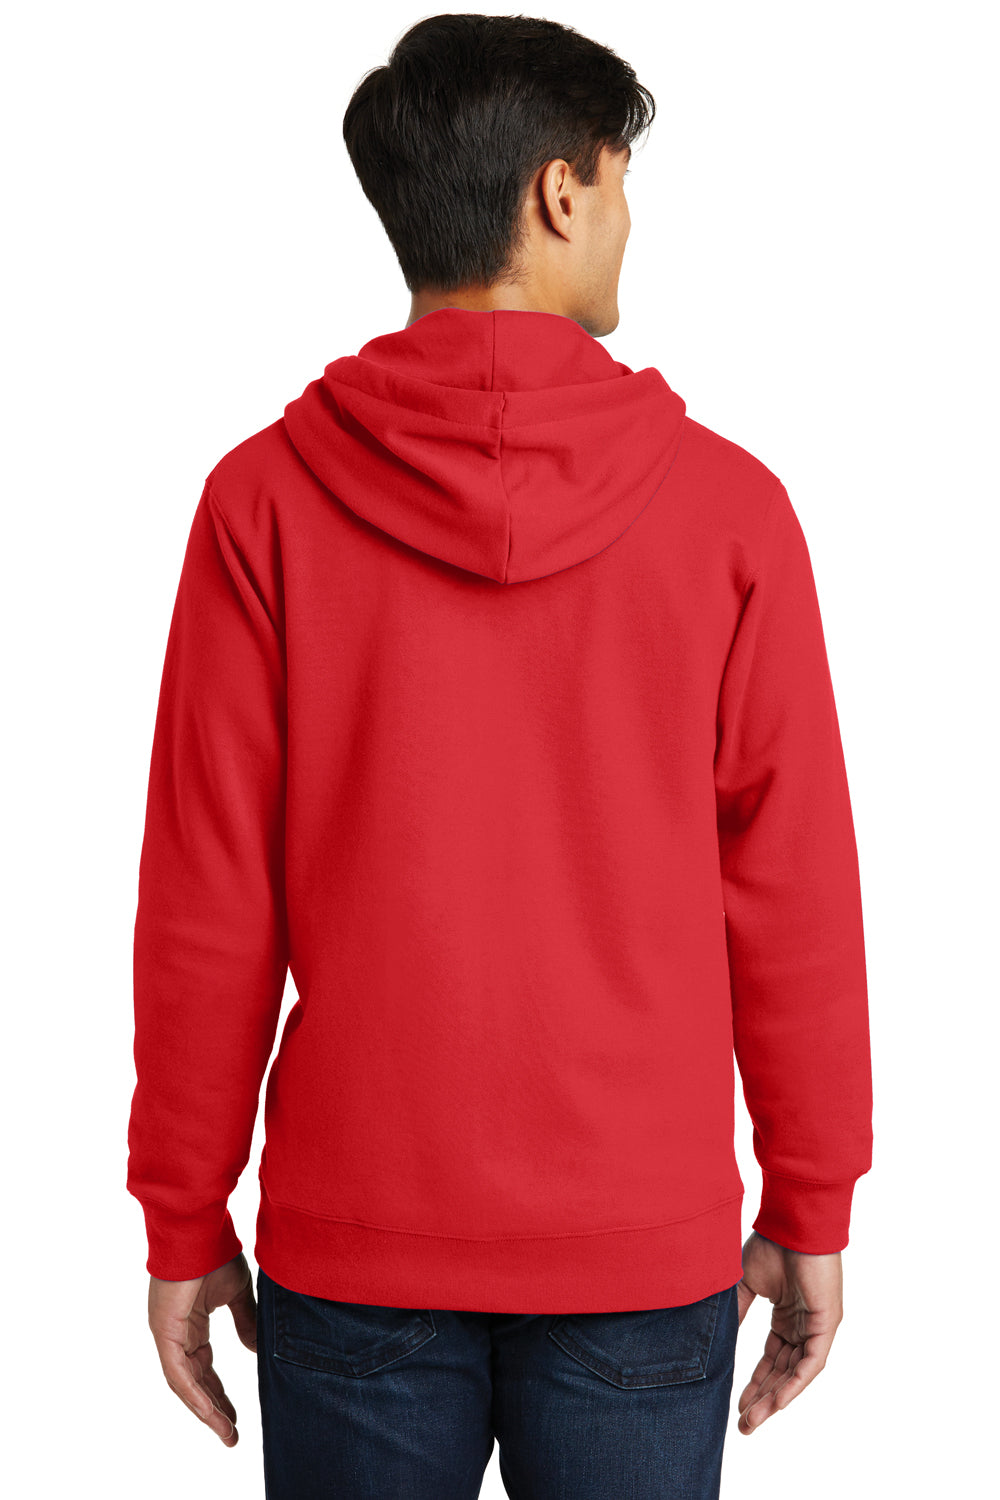 Port & Company PC850ZH Mens Fan Favorite Fleece Full Zip Hooded Sweatshirt Hoodie Red Back